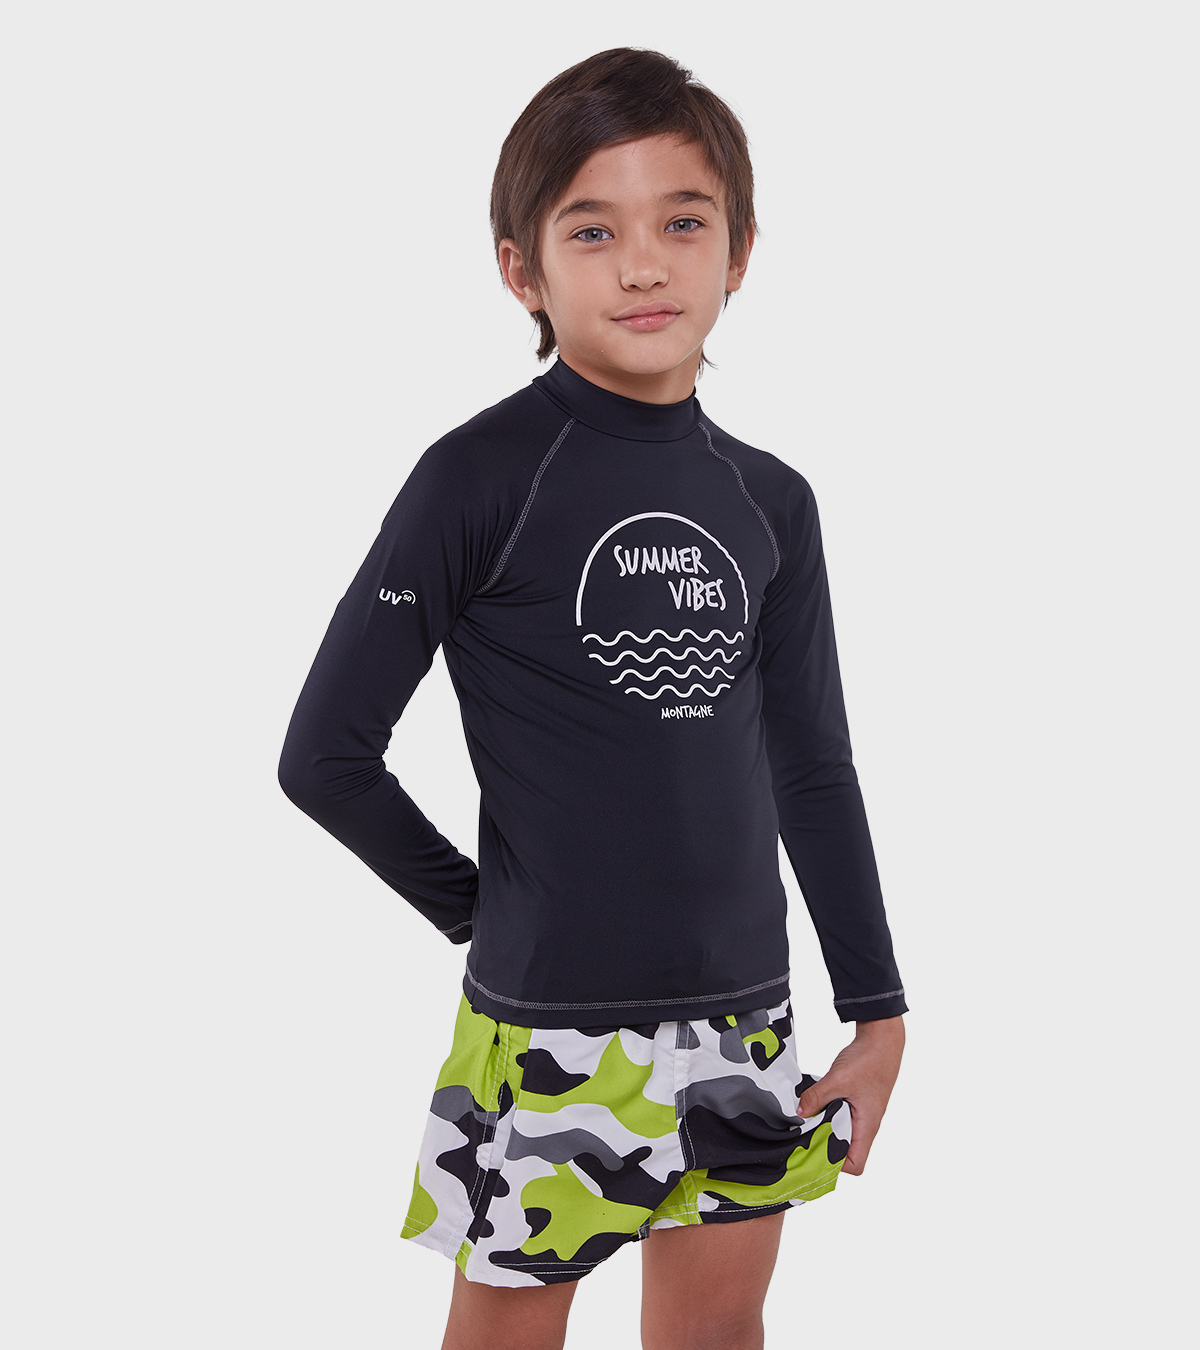 Camiseta neopreno niños uva50 proteccion solar – Precios Boom